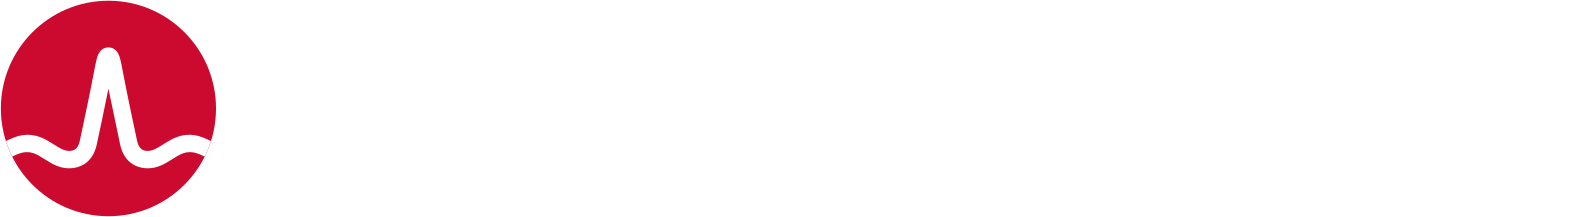 Broadcom logo large for dark backgrounds (transparent PNG)